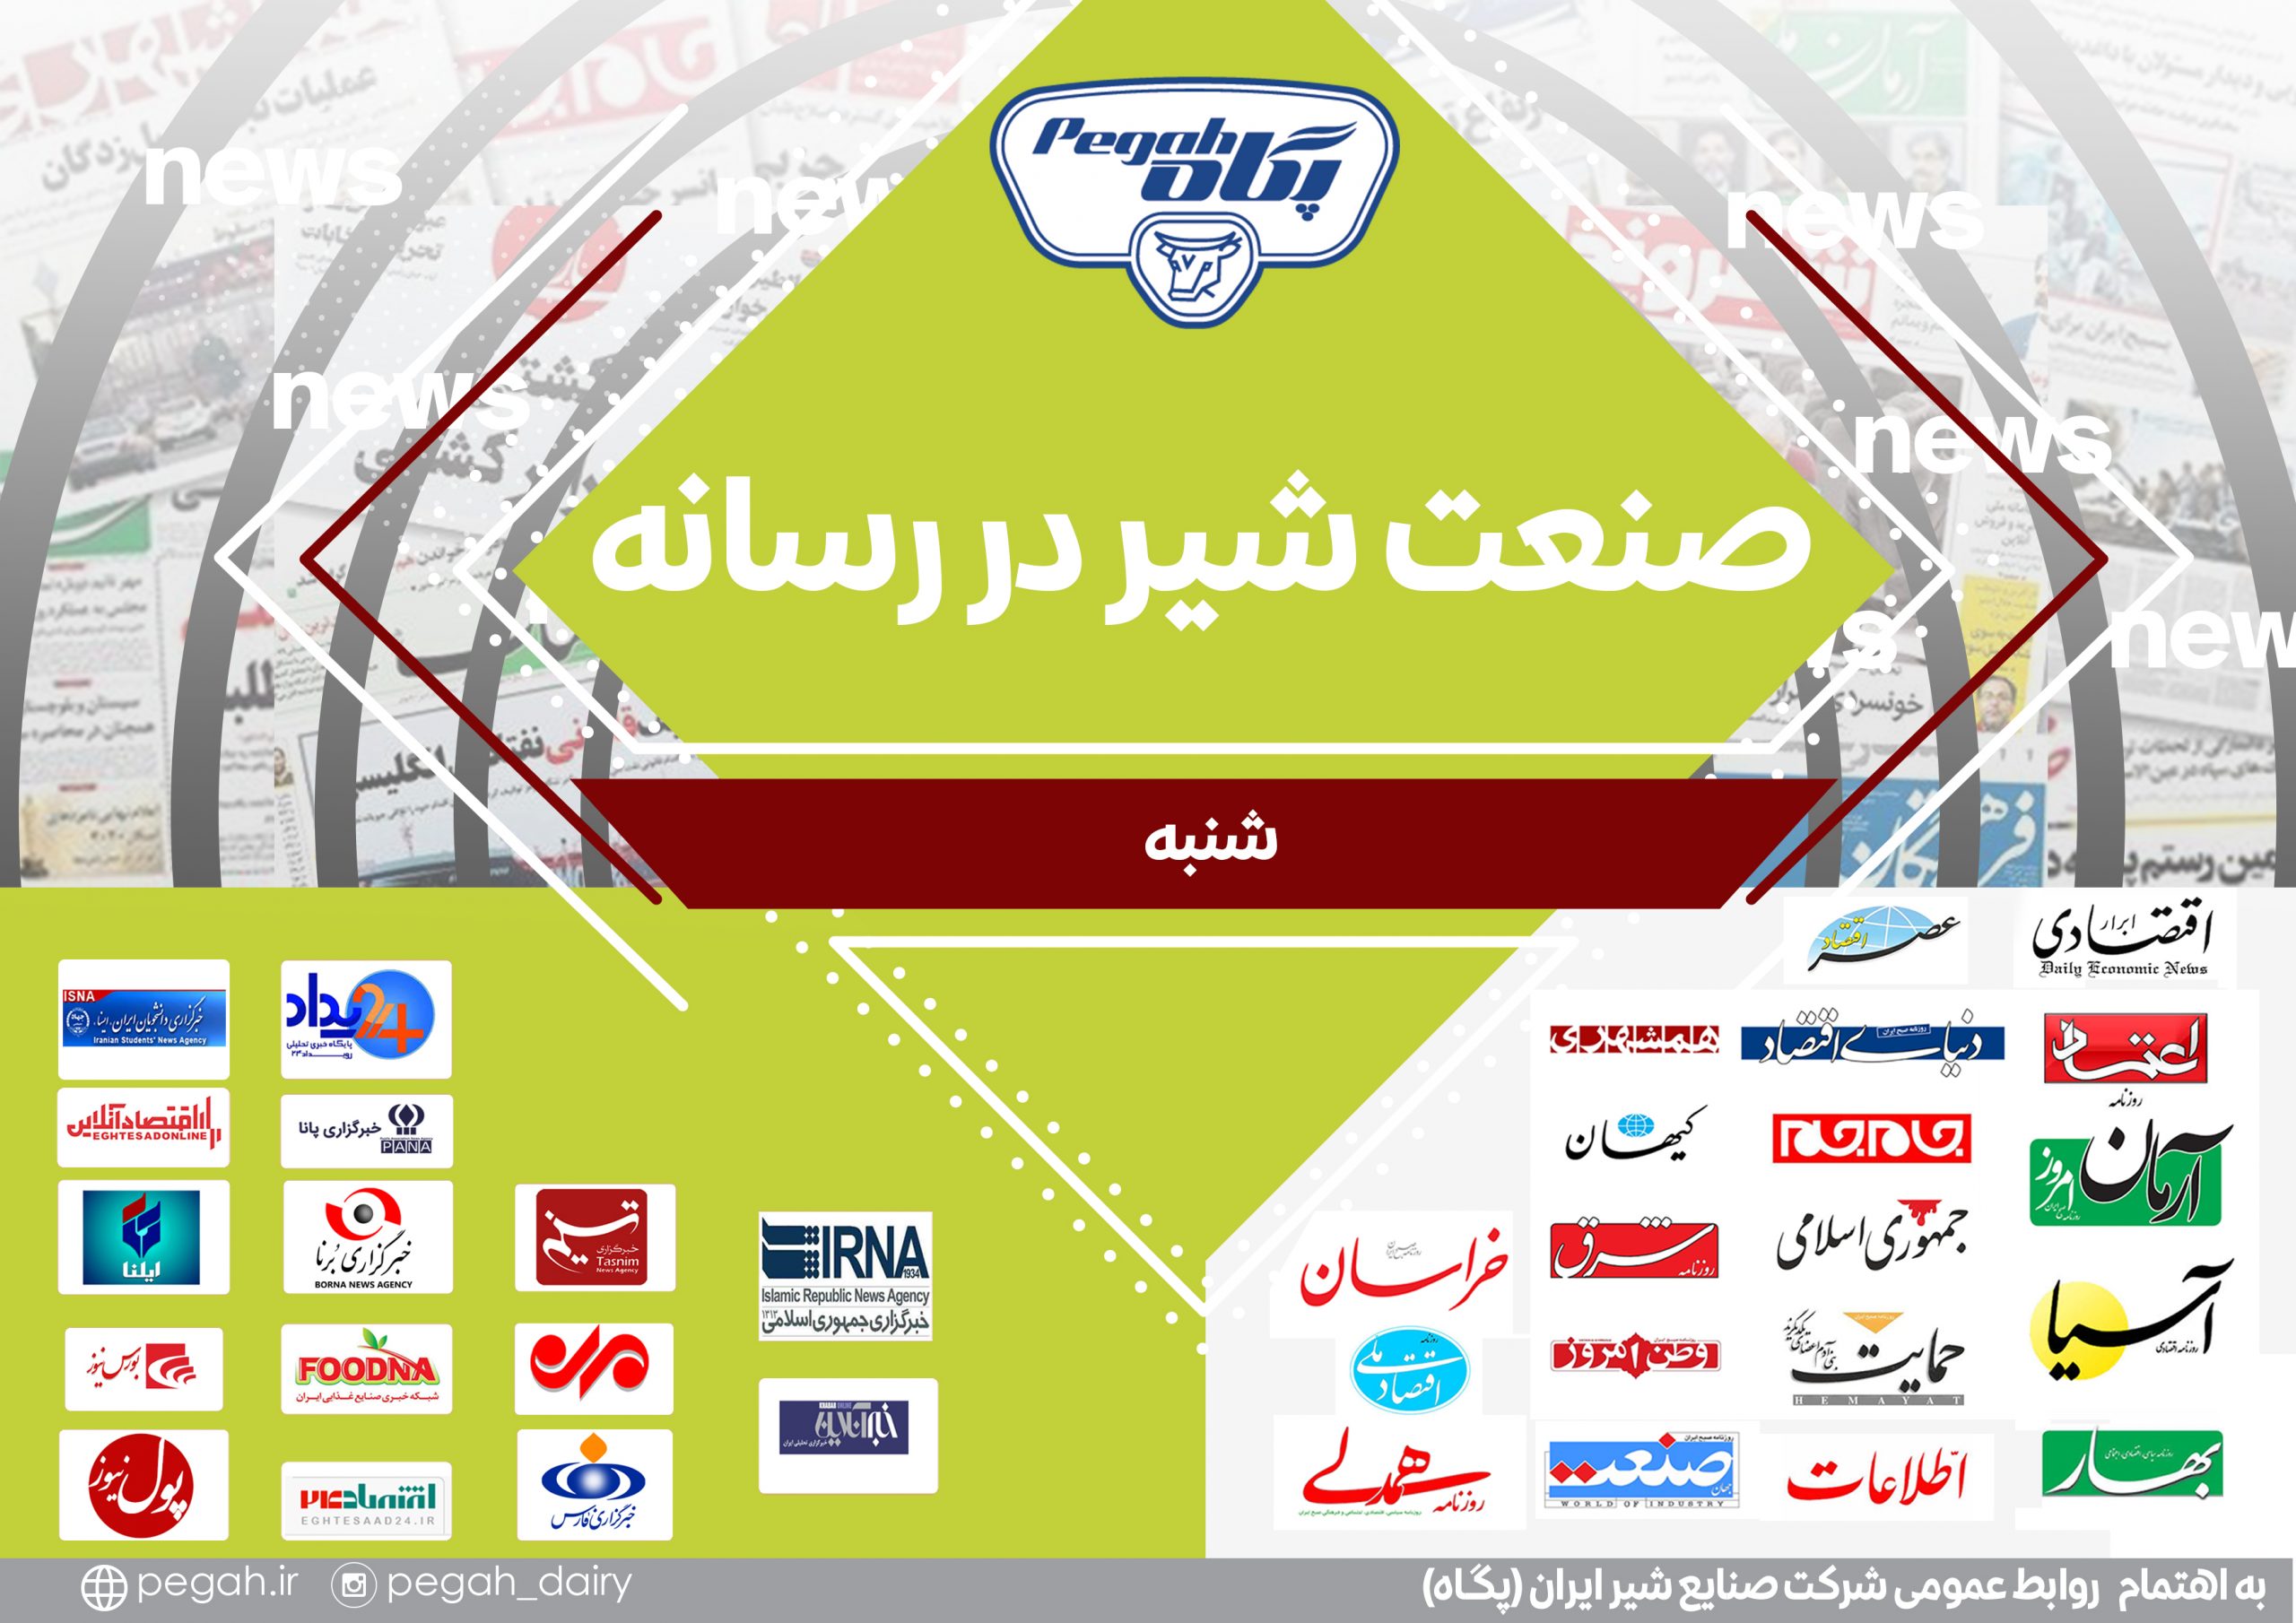 در این گزارش ۱۳ صفحه‌ای، ۷ خبرگزاری در ۷ عنوان خبری، رویدادها را پوشش دادند. روابط عمومی شرکت صنایع شیر ایران (پگاه)